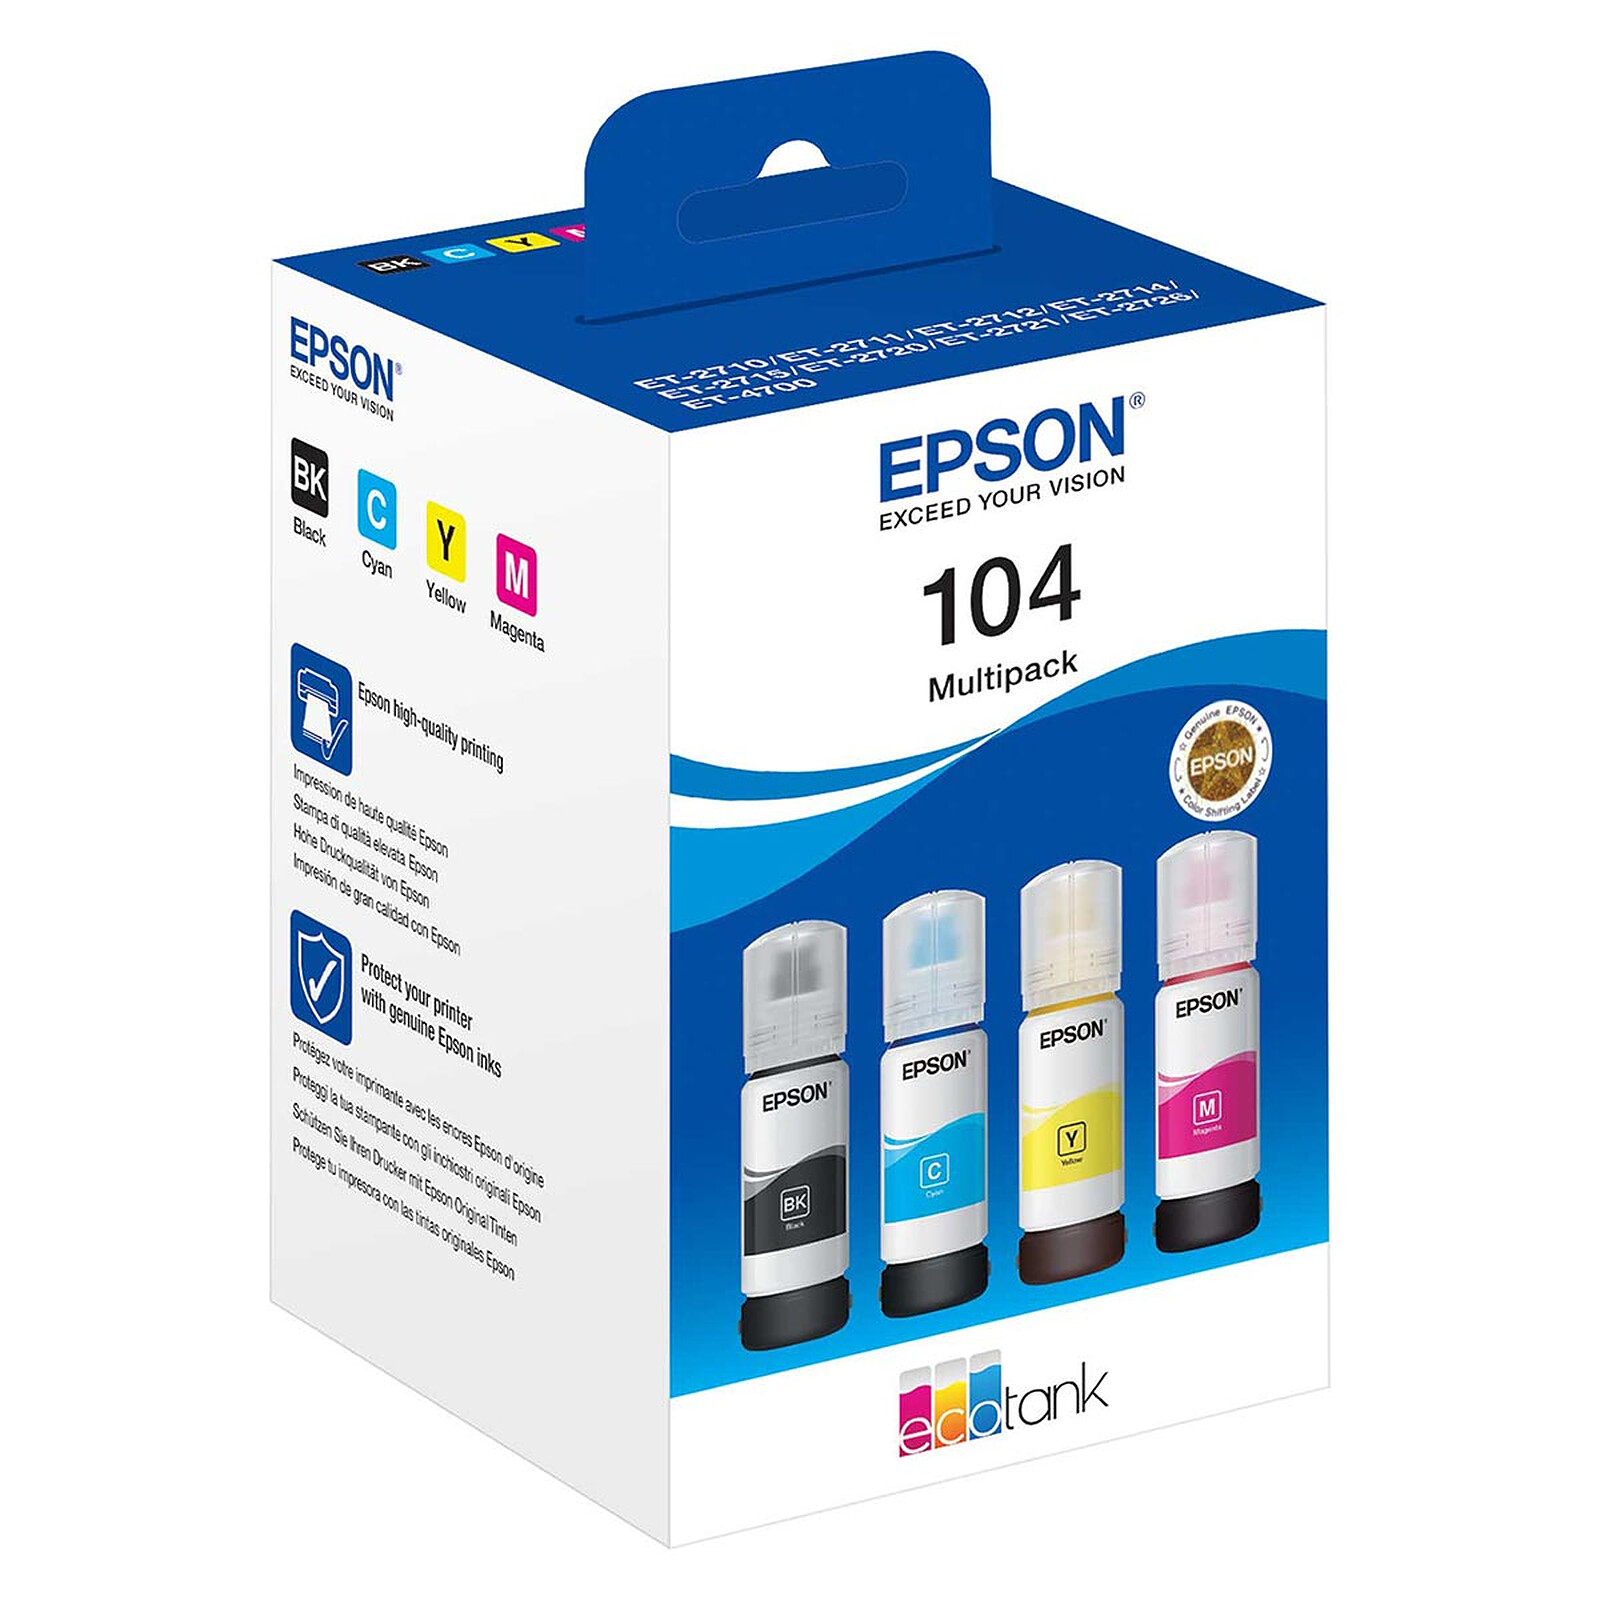 Epson Valise 405 4 couleurs - Cartouche imprimante - LDLC